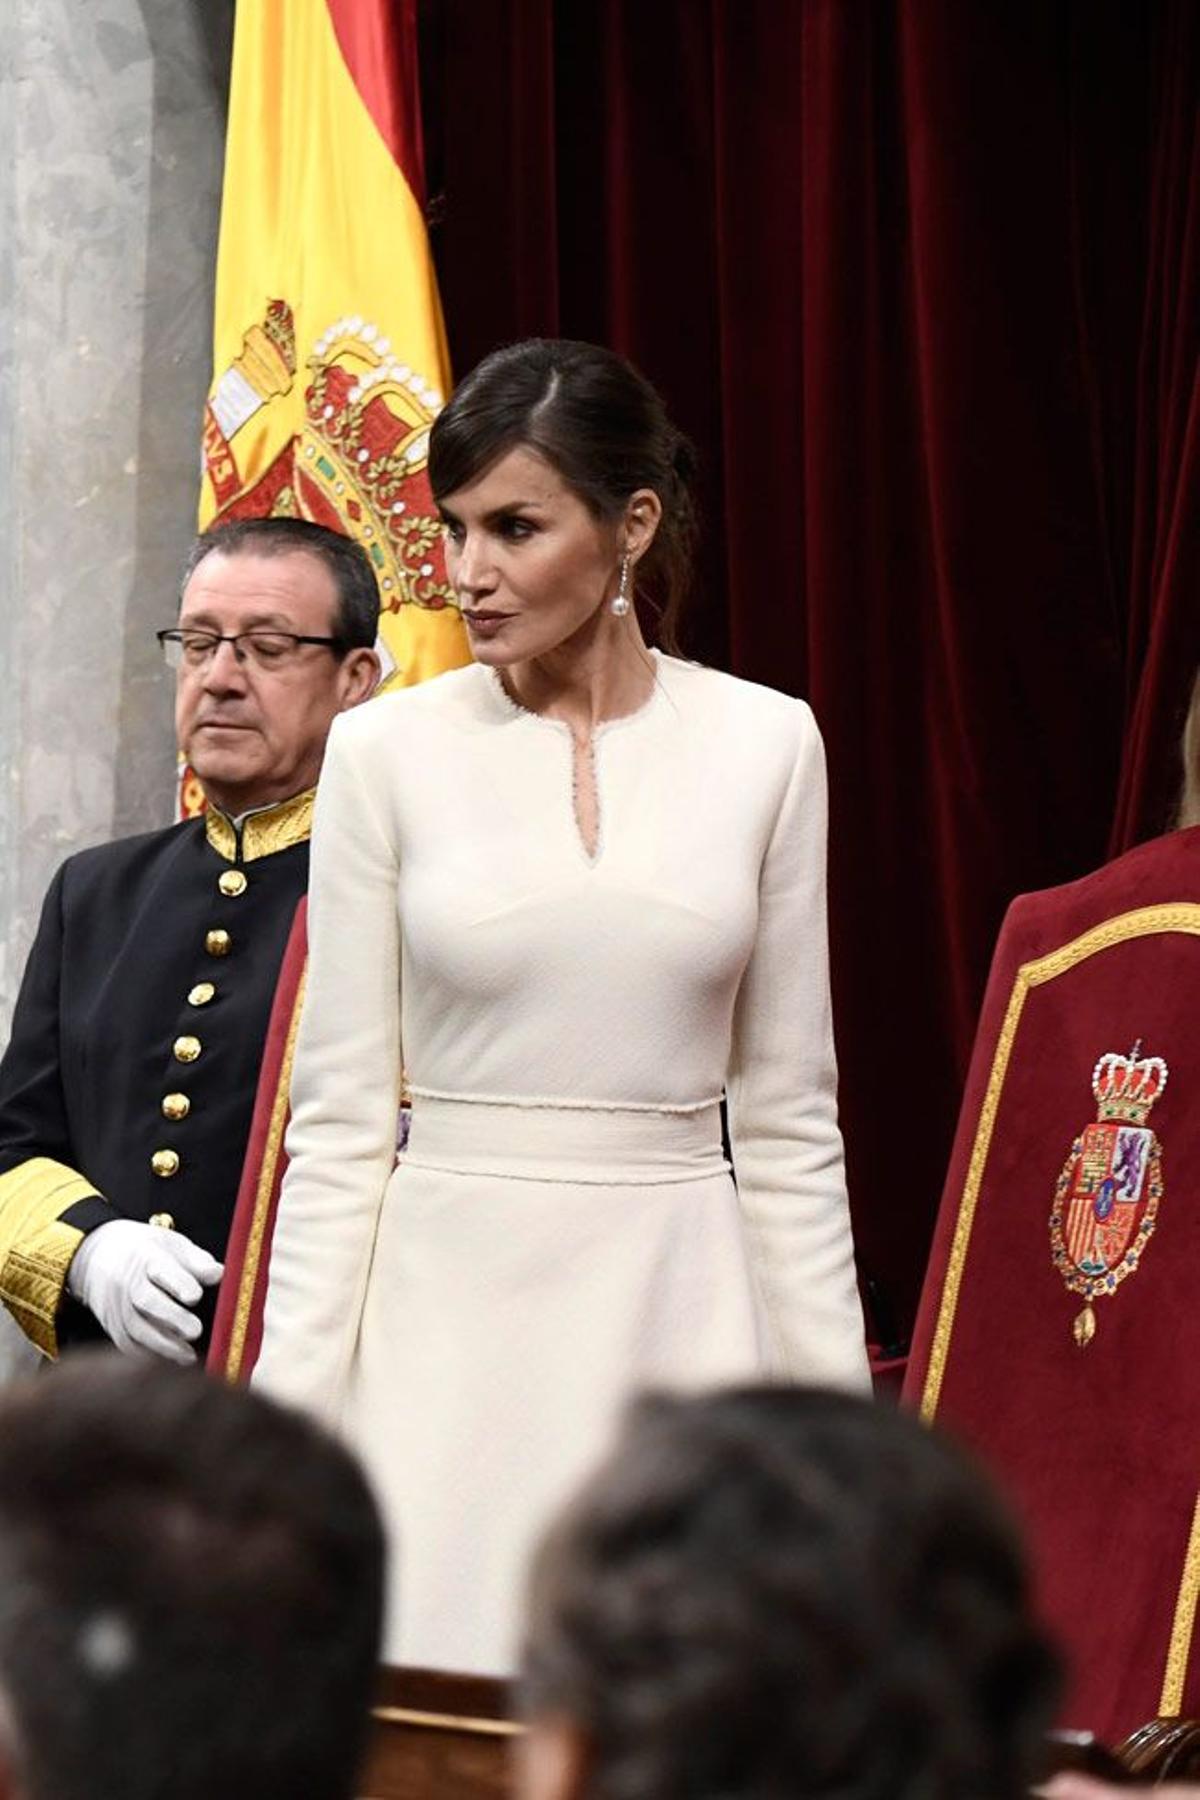 El vestido blanco de la reina Letizia en la ceremonia de apertura de la XIV Legislatura